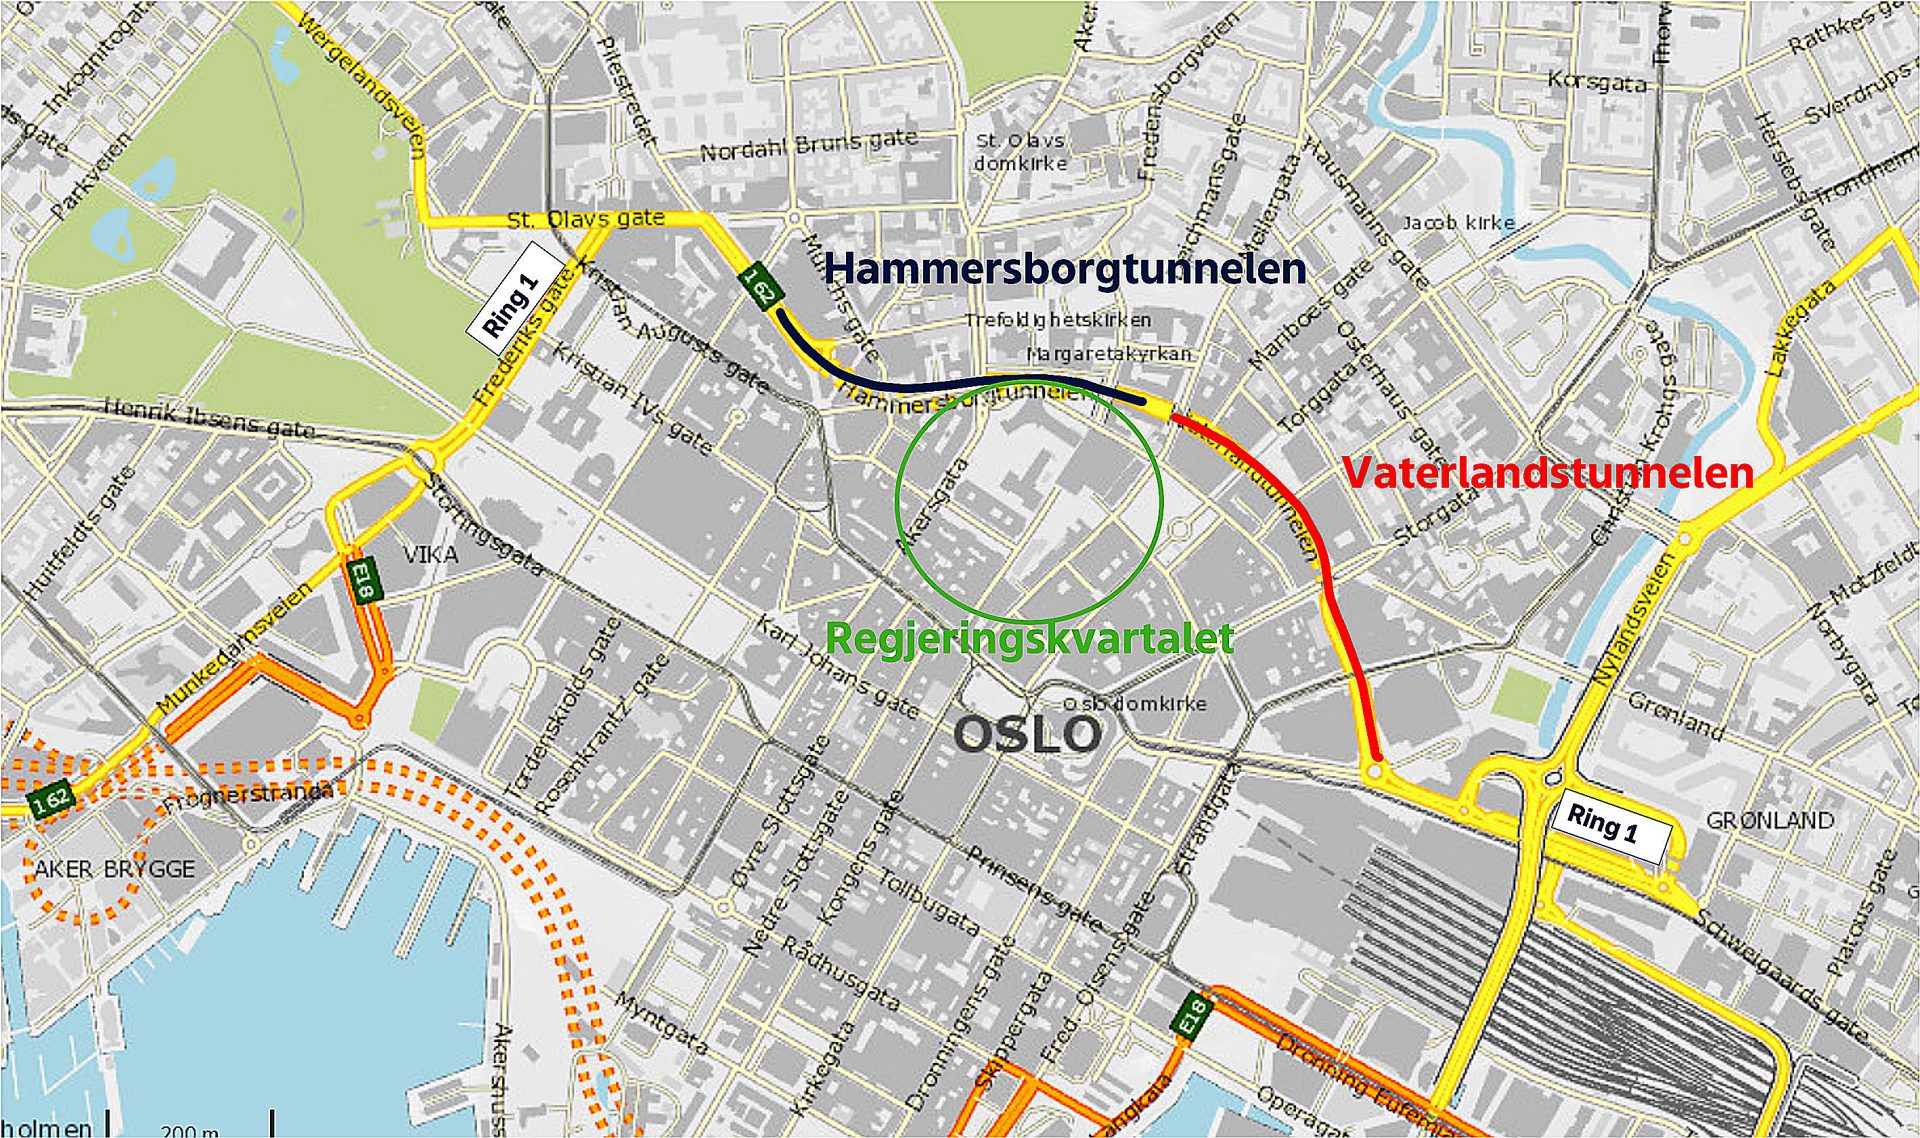 Kart over sentrale oslo som viser veier og tunneler i nærheten av regjeringsdistriktet, uthevet med fargekodede ruter.